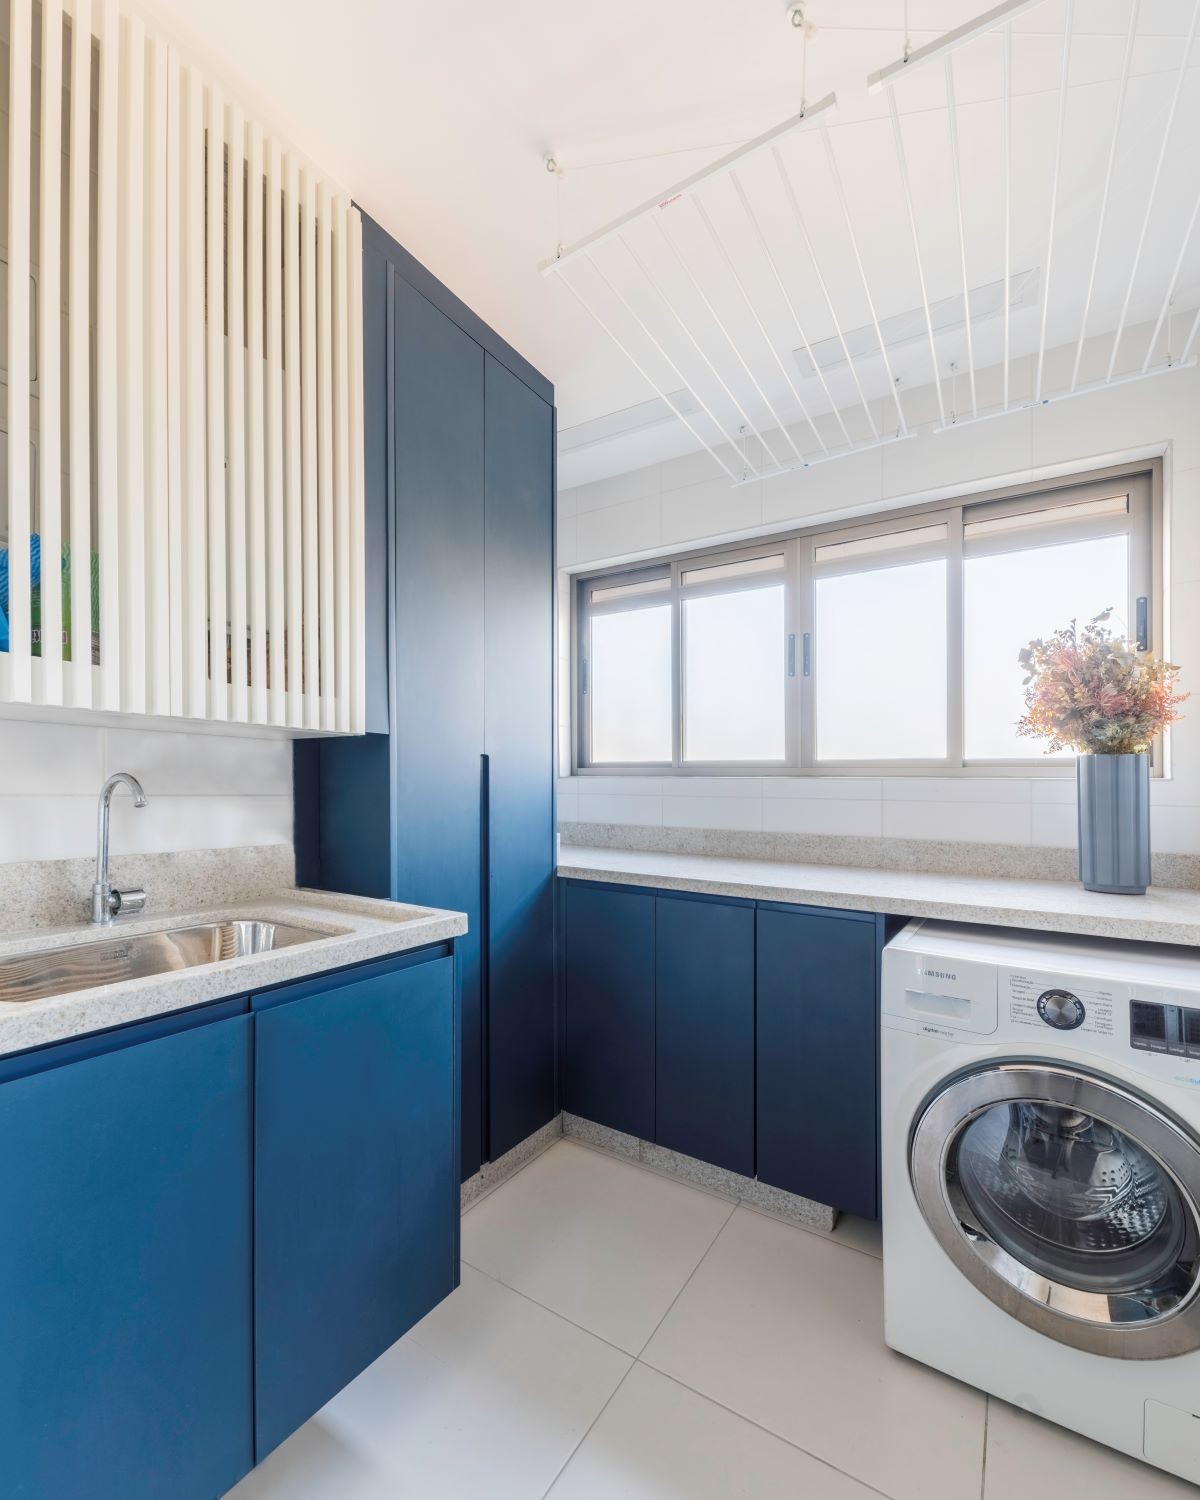 LAVANDERIA | Na lavanderia, o azul segue o tom da cozinha e dá unidade nos ambientes (Foto: Guilherme Pucci / Divulgação)